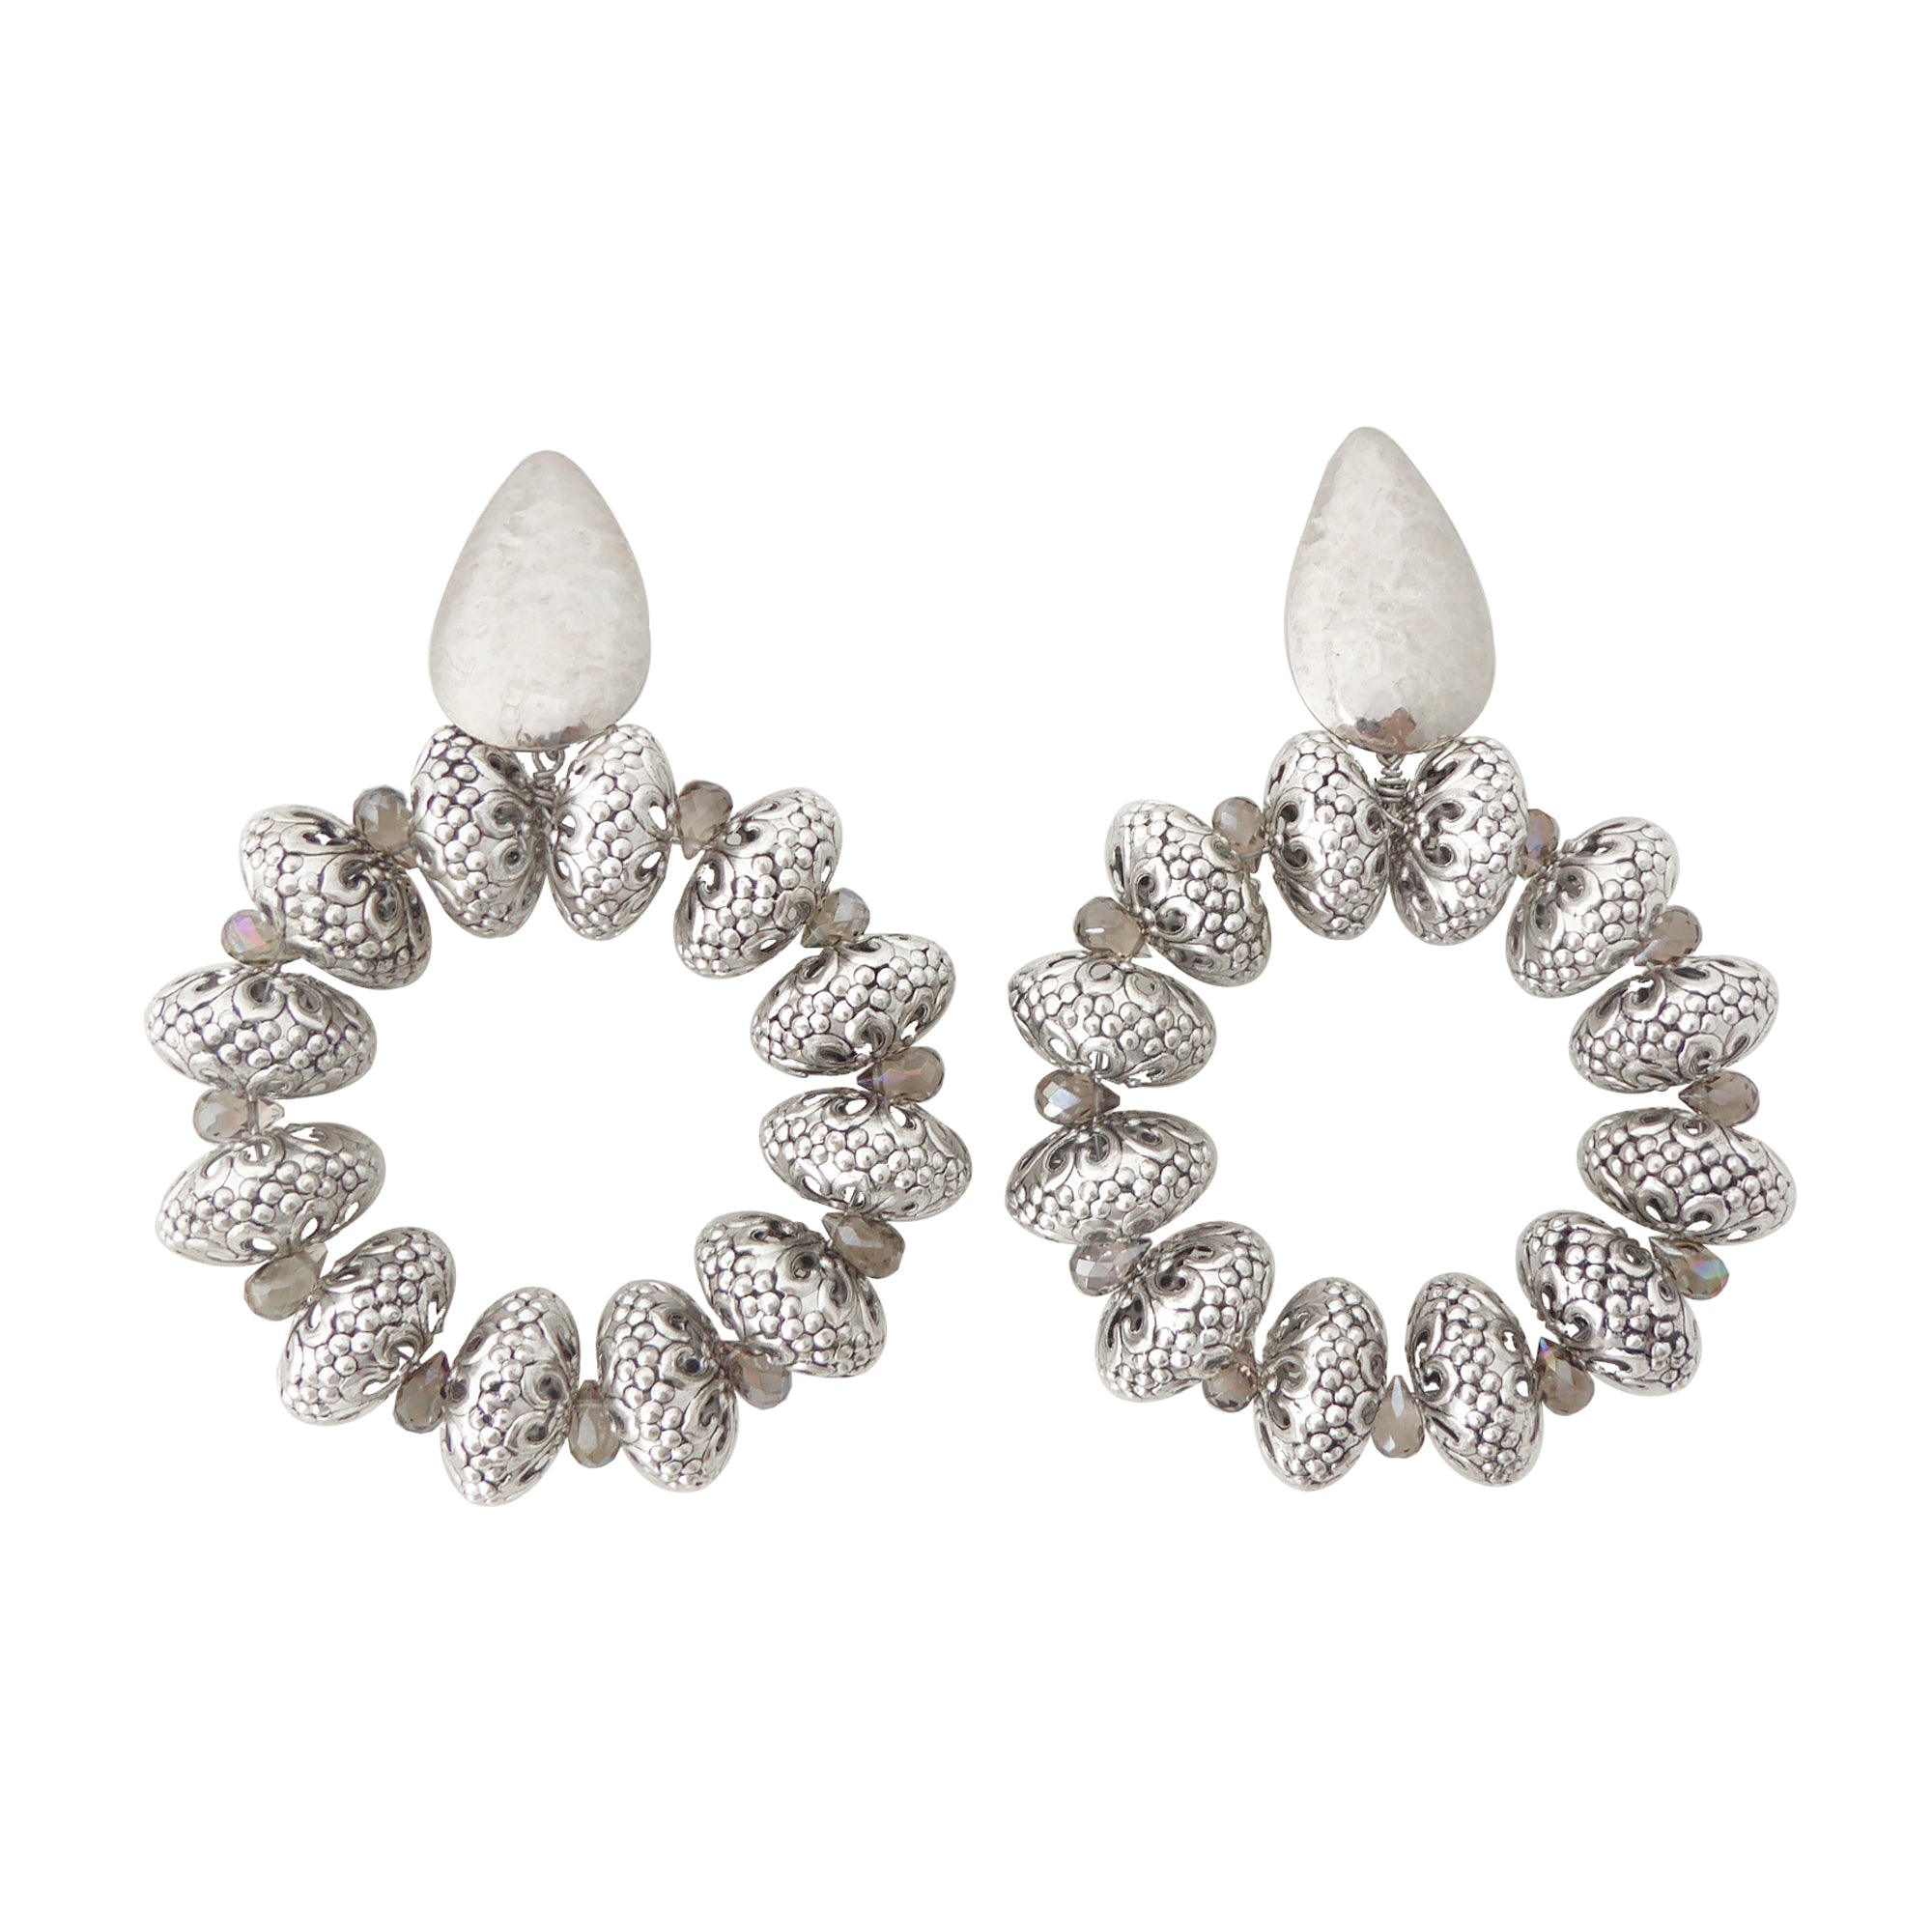 Silver elder earrings by Jenny Dayco 1